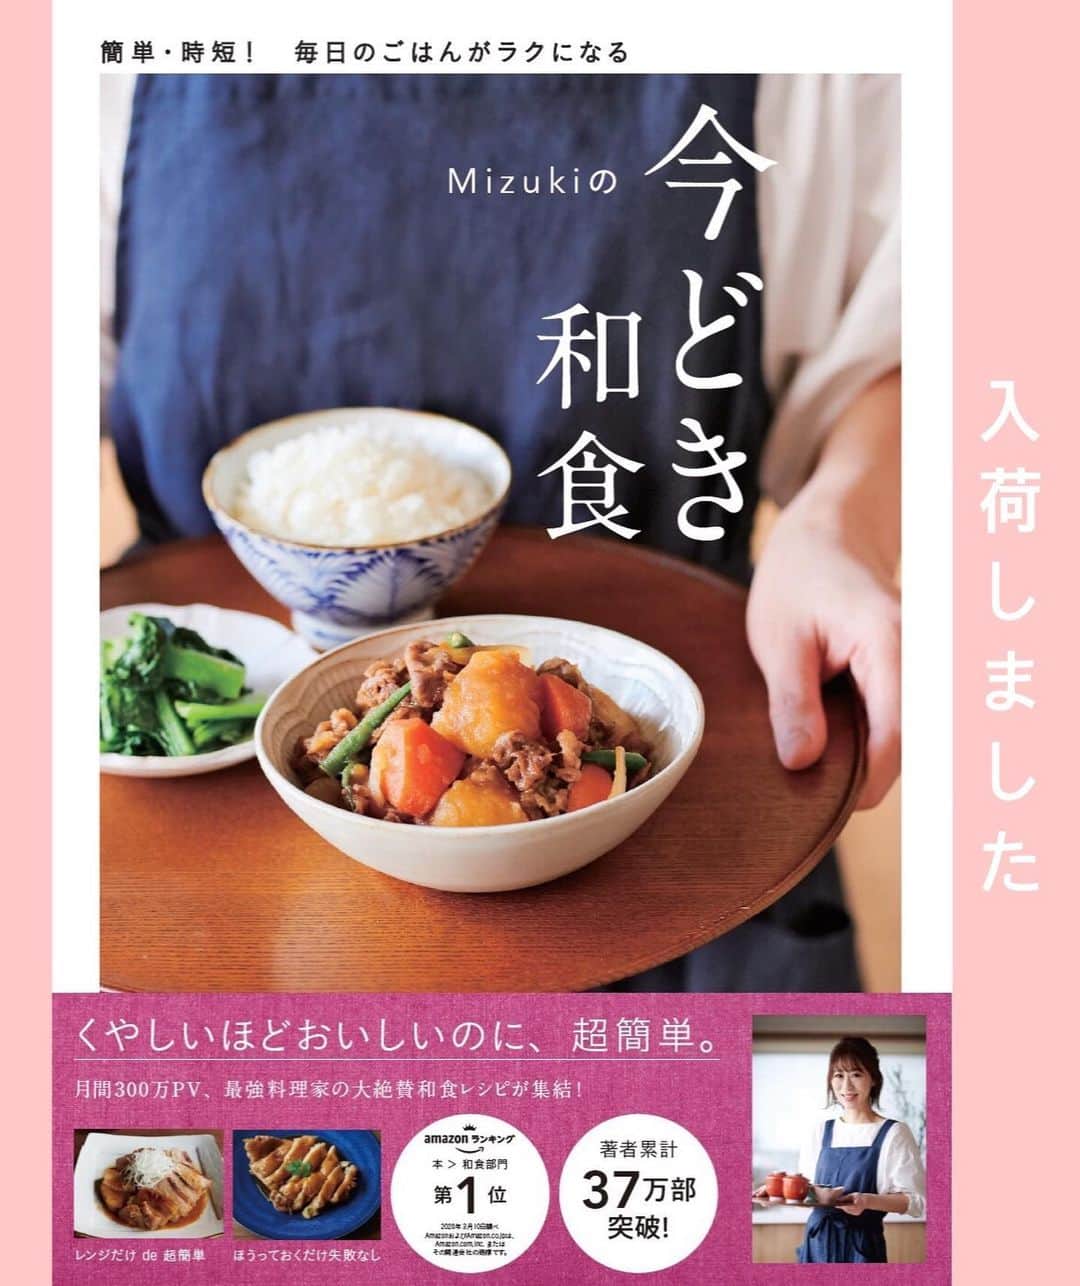 Mizuki【料理ブロガー・簡単レシピ】さんのインスタグラム写真 - (Mizuki【料理ブロガー・簡単レシピ】Instagram)「・﻿ 【レシピ】ーーーーーーーー﻿ ♡レンジde簡単♡﻿ 豚バラなすの香味ごまだれ﻿ ーーーーーーーーーーーーー﻿ ﻿ ﻿ ﻿ おはようございます(*^^*)﻿ ﻿ 今日ご紹介させていただくのは﻿ 豚バラなすのレンジ蒸し♡﻿ レンチン1回で豚肉はジューシーに﻿ なすは色鮮やかに仕上がりますよ〜♩﻿ 今回は混ぜるだけの香味ごまだれで﻿ さっぱりとヘルシーに仕上げました♡﻿ ﻿ これとっても簡単で美味しいので﻿ よかったらお試し下さいね(*´艸`)﻿ (＊しゃぶしゃぶ用肉の代わりに﻿ 4cm長さに切った豚バラ薄切り肉でもOK♩)﻿ ﻿ ﻿ ﻿ ーーーーーーーーーーーーーーーーーーーー﻿ 【2人分】﻿ 豚バラしゃぶしゃぶ用肉...150g﻿ なす...2本﻿ 酒...小2﻿ 塩...少々﻿ ●醤油・酢・白ごま...各大1﻿ ●砂糖・ごま油...各大1/2﻿ ●生姜チューブ...2cm﻿ (あれば)大葉...適量﻿ ﻿ 1.●を合わせてたれを作っておく。なすは3cm大の乱切りにし、水に3分晒して水気を切る。﻿ 2.耐熱ボウルになすを入れ、豚肉を広げてのせる。酒、塩を振りかけてふんわりラップし、600Wのレンジで6分加熱する。﻿ 3.豚肉をほぐすように混ぜ、水気を切って器に盛り、1のたれをかけて大葉をのせる。﻿ ーーーーーーーーーーーーーーーーーーーー﻿ ﻿ ﻿ ﻿ 《ポイント》﻿ ♦︎しゃぶしゃぶ用の代わりに、4〜5cm長さに切った豚バラ薄切り肉を使用してもOK♩﻿ ﻿ ﻿ ﻿ ﻿ ﻿ ﻿ 【🎥YouTube更新しました🎥】﻿ (＊ハイライトから飛べます♩)﻿ ↓﻿ 🧁ホケミで！クッキー&クリームマフィン﻿ 🍳揉んで焼くだけ！やみつきチキン﻿ 🌭材料4つ！アメリカンドッグ﻿ ﻿ ﻿ ﻿ ﻿ ﻿ 5刷重版しました🔻﻿ 本当にありがとうございます🙇‍♀️﻿ ＿＿＿＿＿＿＿＿＿＿＿＿＿＿＿＿＿＿＿﻿ 📕\ \ 新刊発売中 / /📕﻿ 簡単・時短！ 毎日のごはんがラクになる﻿ ✨🦋 【 #Mizukiの今どき和食 】🦋✨﻿ ＿＿＿＿＿＿＿＿＿＿＿＿＿＿＿＿＿＿＿﻿ なるべく少ない材料で﻿ 手間も時間も省きながら﻿ 簡単にできるおいしい和食レシピ♩﻿ 簡単に失敗なくマスターできる一冊で﻿ もっと気軽に、カジュアルに﻿ 和食を楽しんで下さいね(*^^*)﻿ ＿＿＿＿＿＿＿＿＿＿＿＿＿＿＿＿＿＿＿﻿ ﻿ ﻿ ﻿ ＿＿＿＿＿＿＿＿＿＿＿＿＿＿＿＿＿﻿ 🎀5刷重版しました🎀﻿ 混ぜて焼くだけ。はじめてでも失敗しない！﻿ 【#ホットケーキミックスのお菓子 】﻿ ﻿ 一冊まるっとホケミスイーツ♩﻿ 普段のおやつから﻿ 特別な日にも使えるレシピを﻿ この一冊に詰め込みました(*^^*)﻿ ホットケーキミックスを使えば﻿ 簡単に本格的なお菓子が作れますよ♡﻿ ＿＿＿＿＿＿＿＿＿＿＿＿＿＿＿＿＿﻿ ﻿ ⭐️ストーリー、ハイライト、プロフ画面に﻿ 本のURLを貼らせていただいております♩﻿ →(@mizuki_31cafe )﻿ ﻿ ﻿ ﻿ ﻿ #豚ばら#なす#レンジ#香味だれ#ヘルシー#うちで過ごそう#おうち時間#Mizuki#簡単レシピ#時短レシピ#節約レシピ#料理#レシピ#フーディーテーブル#マカロニメイト#おうちごはん#デリスタグラマー#料理好きな人と繋がりたい#おうちごはんlover#foodpic#follow#cooking#recipe#lin_stagrammer#stayhome#豚バラなすの香味ごまだれ」6月26日 7時28分 - mizuki_31cafe